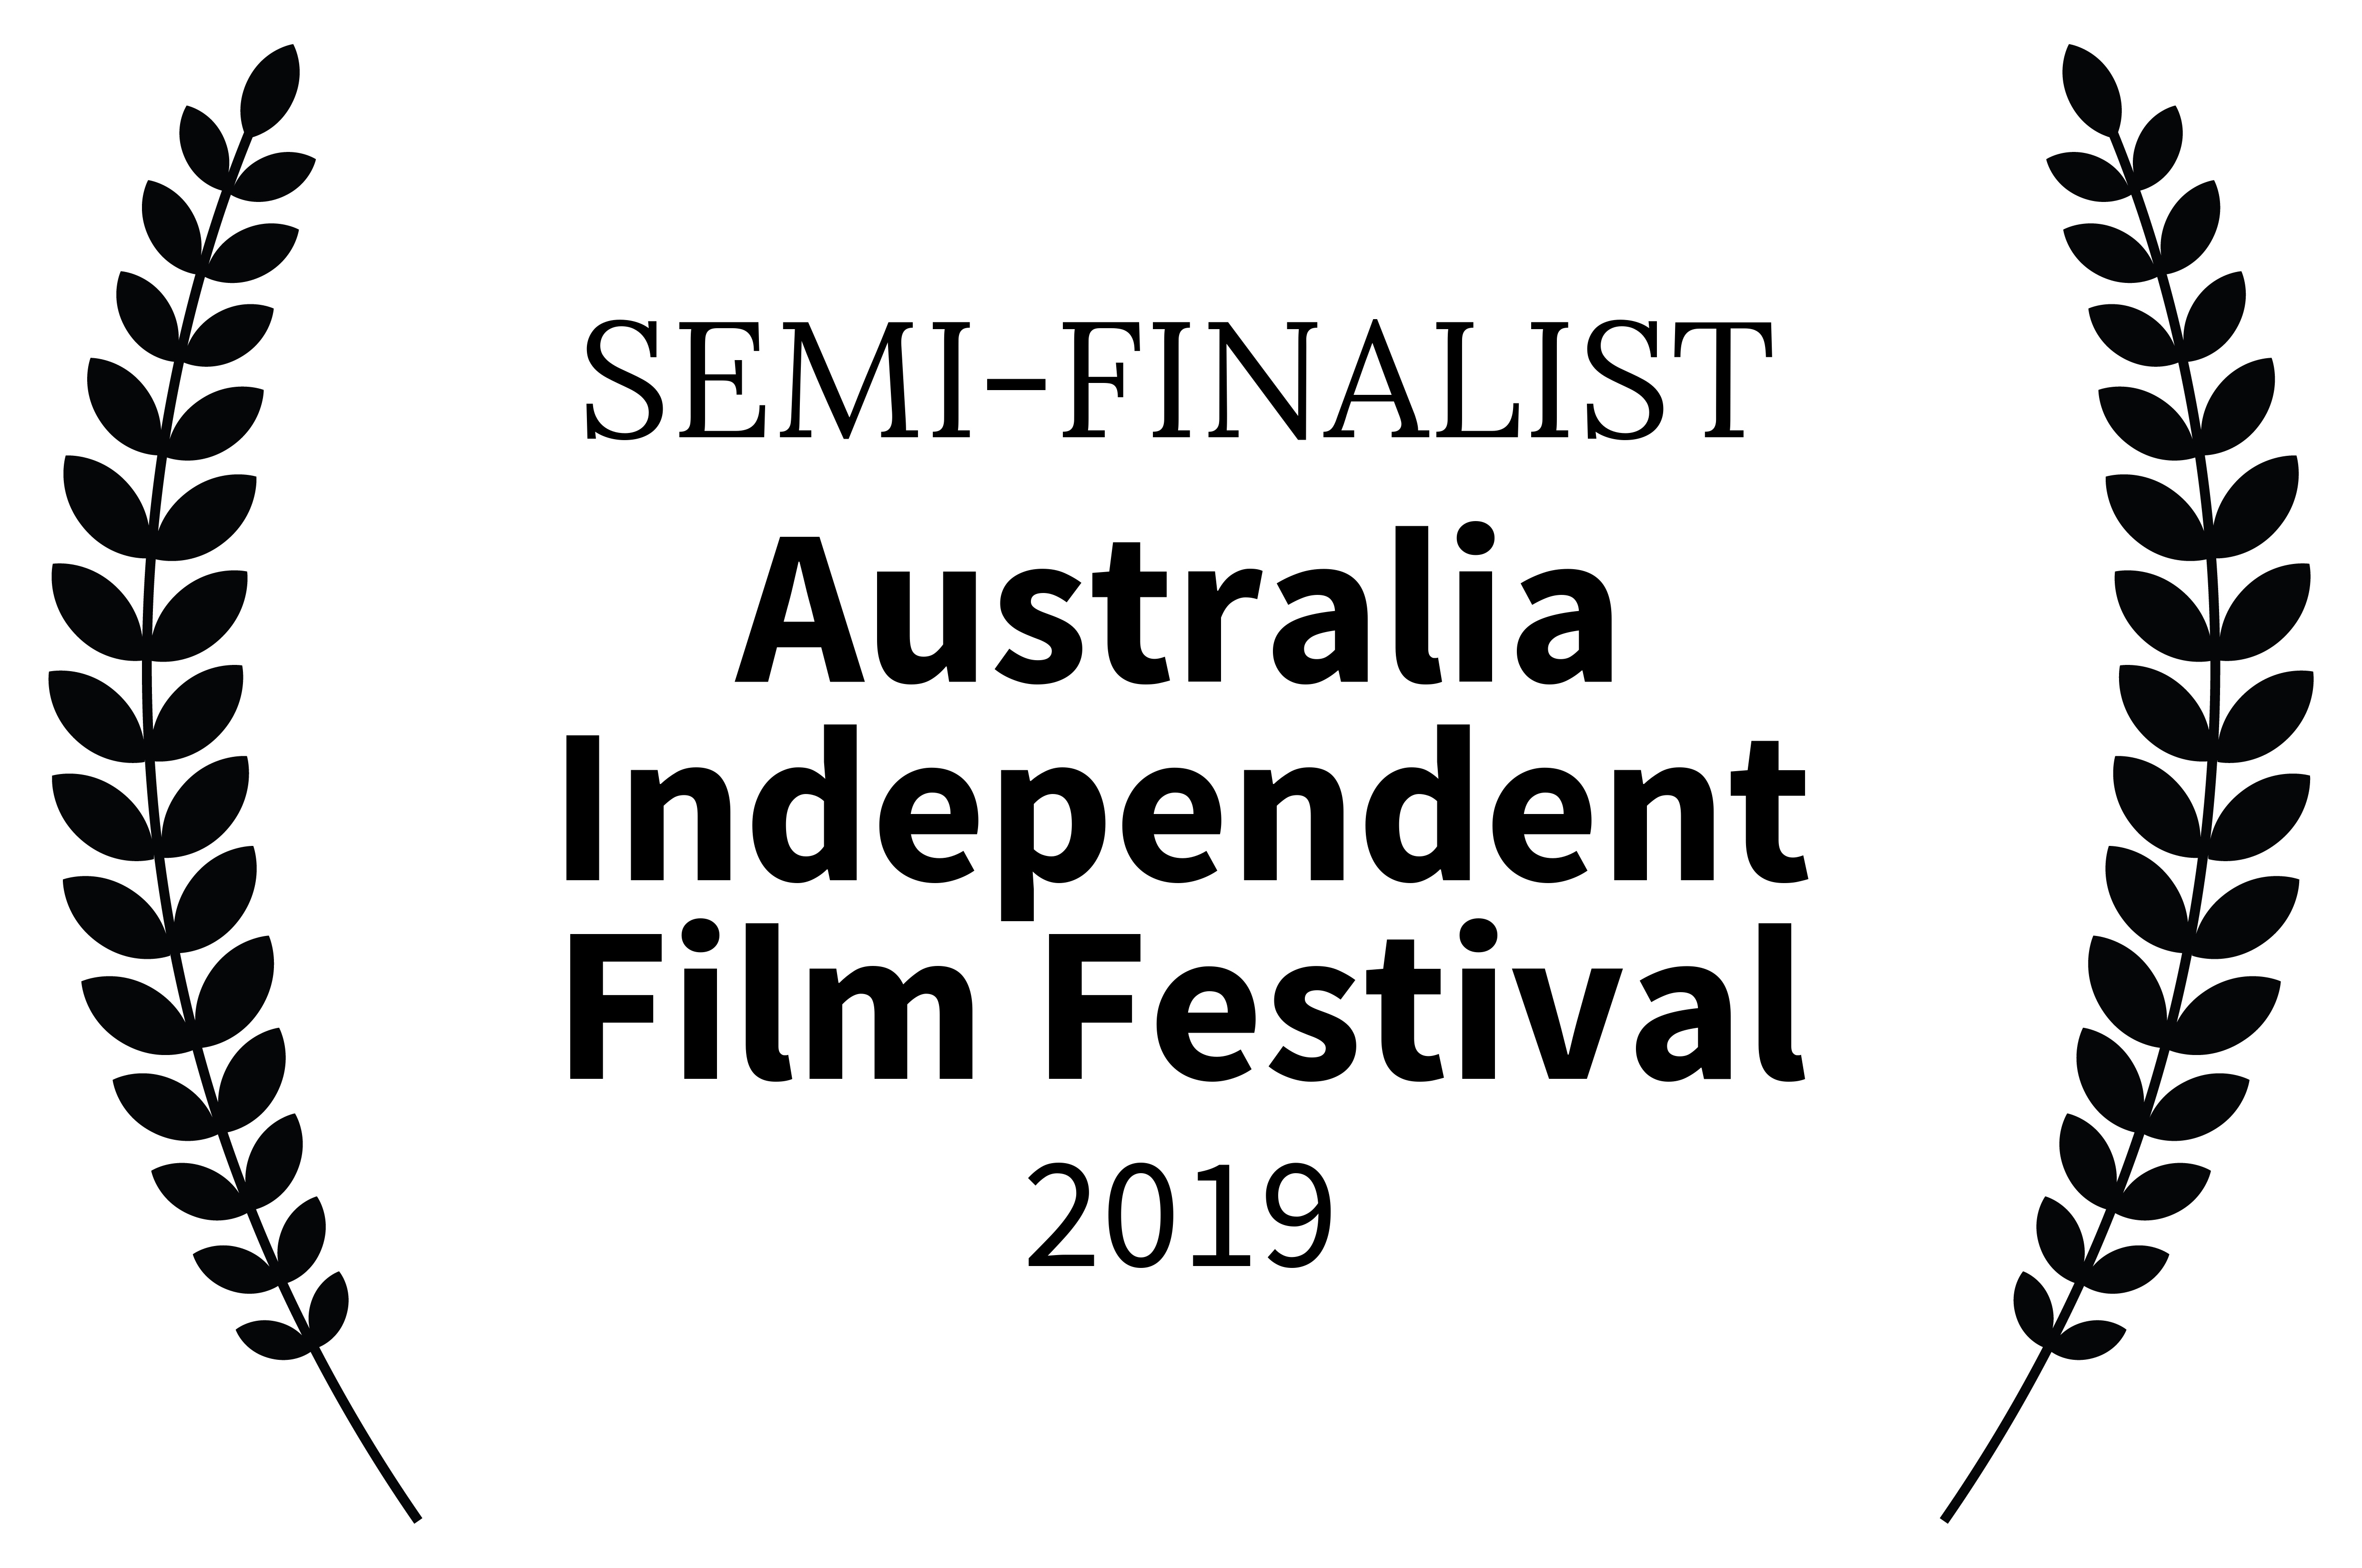 Austrailia Independent Film Festival